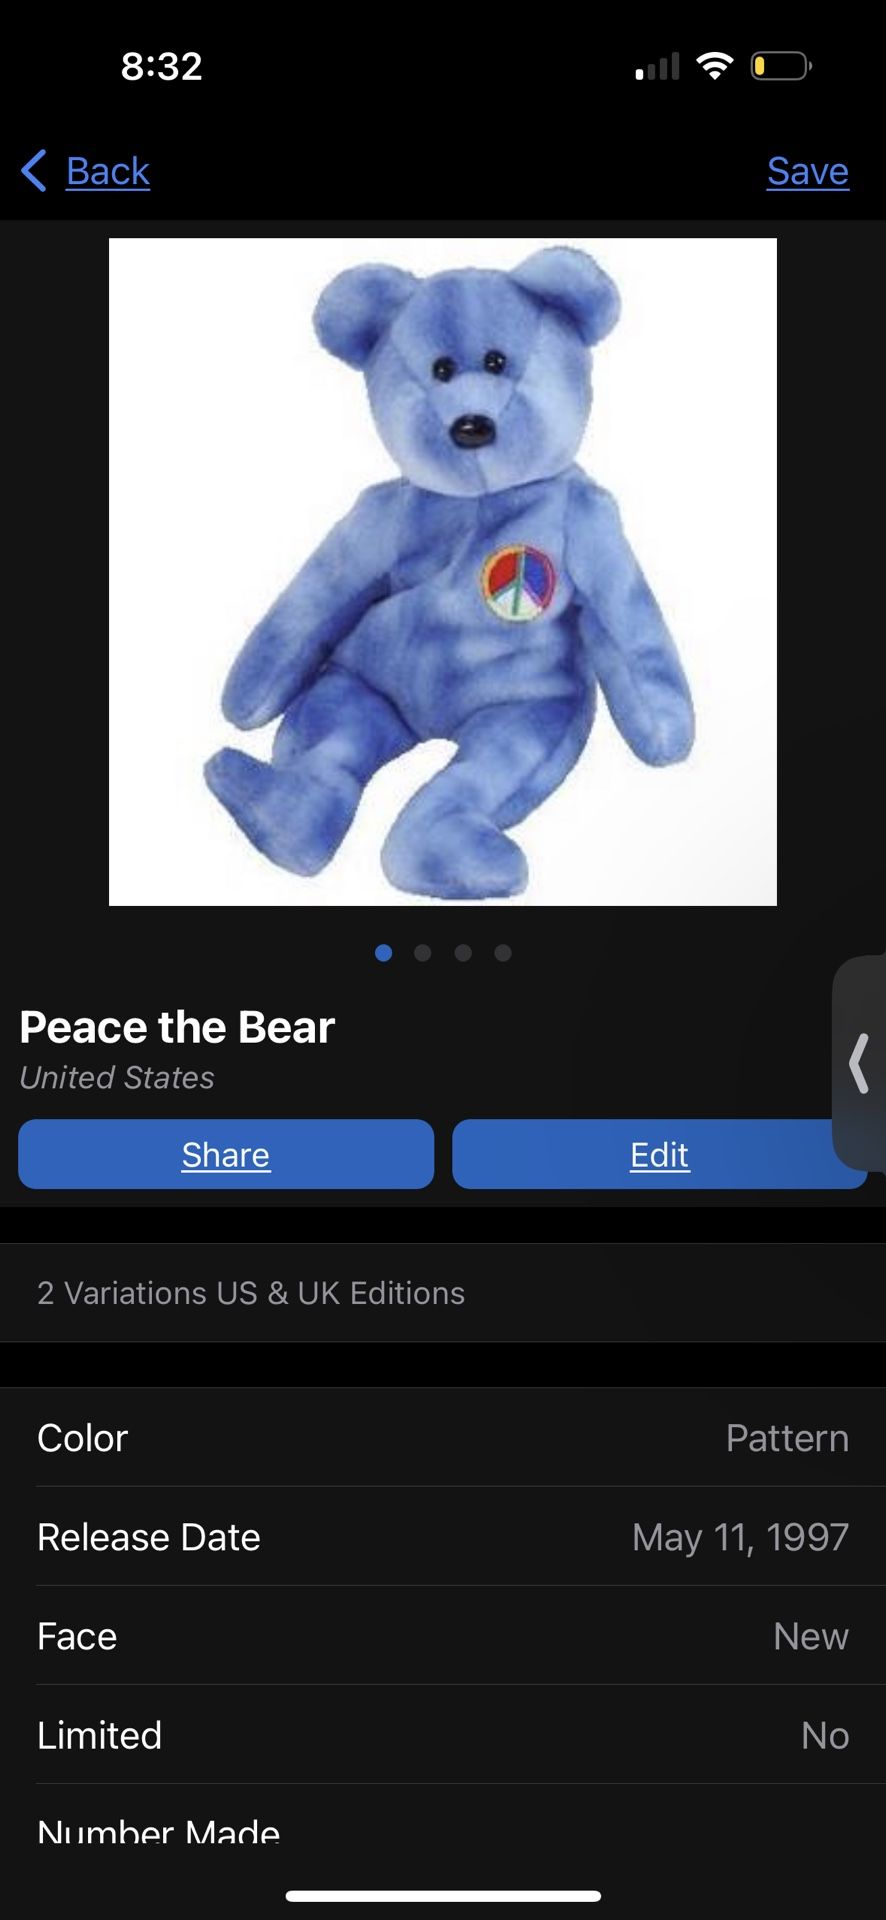 Peace the Bear 1997